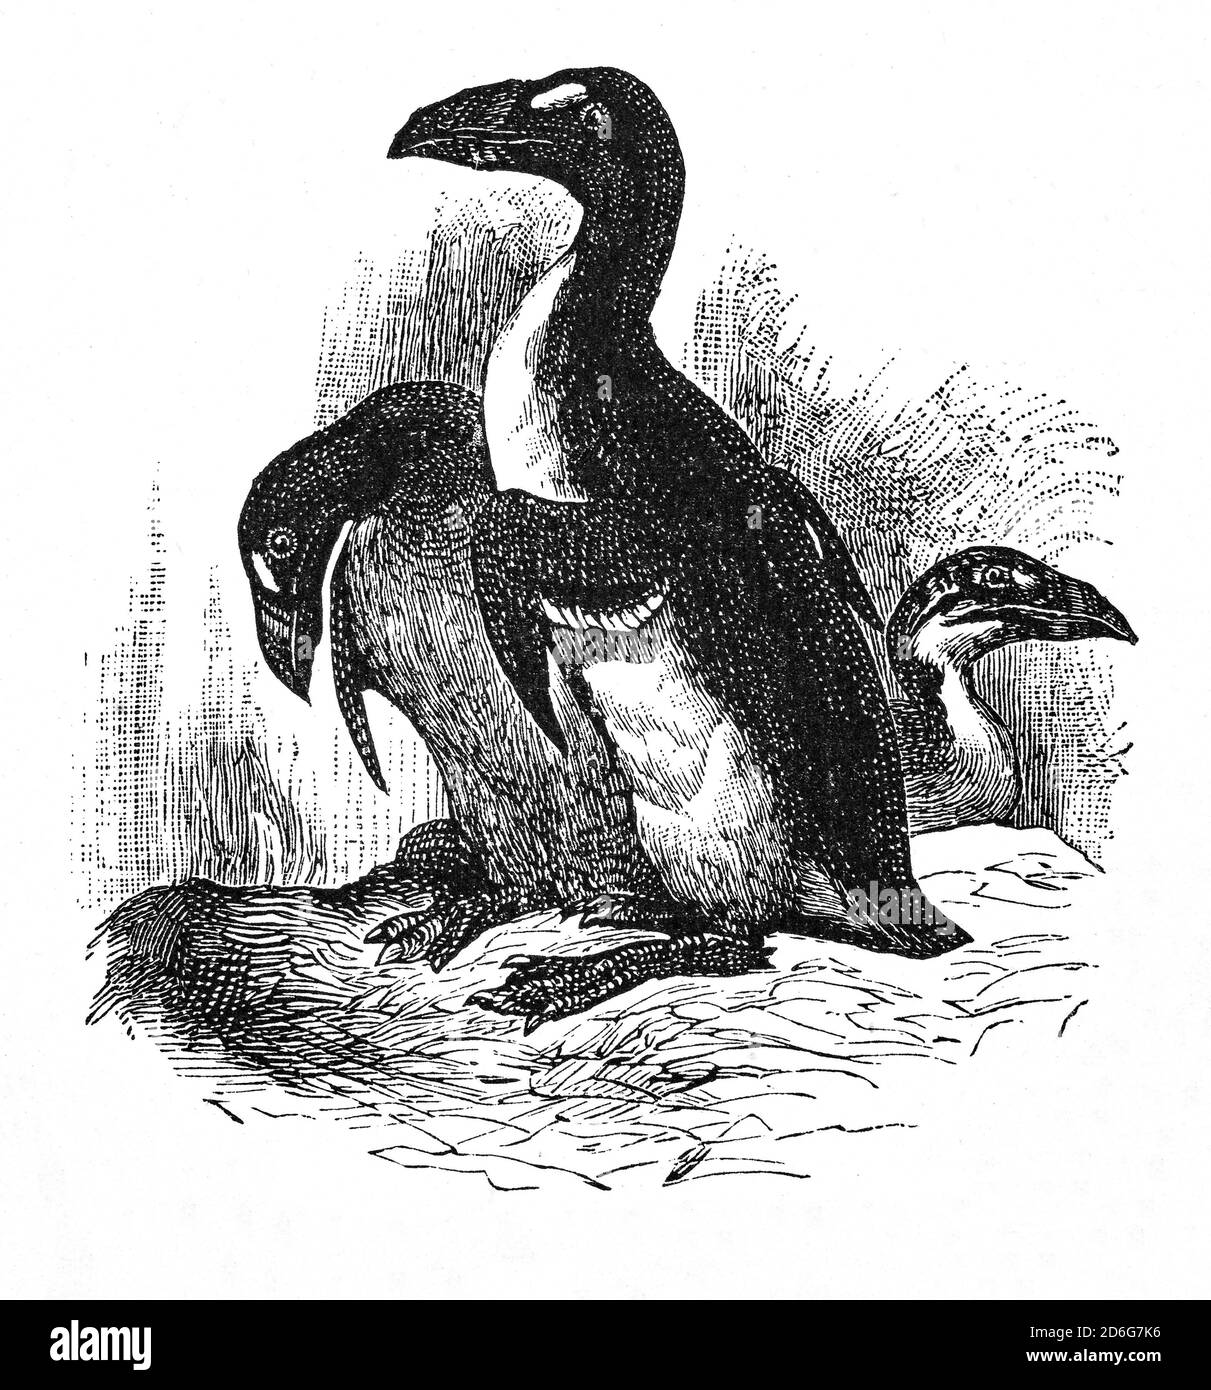 Illustration de la Grande Auk (Pinguinus impennis), un oiseau sans vol qui s'est éteint au milieu du XIXe siècle. Se reproduisant sur des îles rocheuses isolées, les premiers explorateurs européens ont utilisé le grand auk comme source de nourriture pratique, et le duvet de l'oiseau était en forte demande en Europe. Les scientifiques se sont rendu compte que le grand auk était en train de disparaître et qu'il est devenu le bénéficiaire de nombreuses lois environnementales initiales, mais cela s'est avéré inefficace. Les deux derniers spécimens confirmés ont été tués à Eldey, au large de la côte islandaise, le 3 juin 1844. Banque D'Images